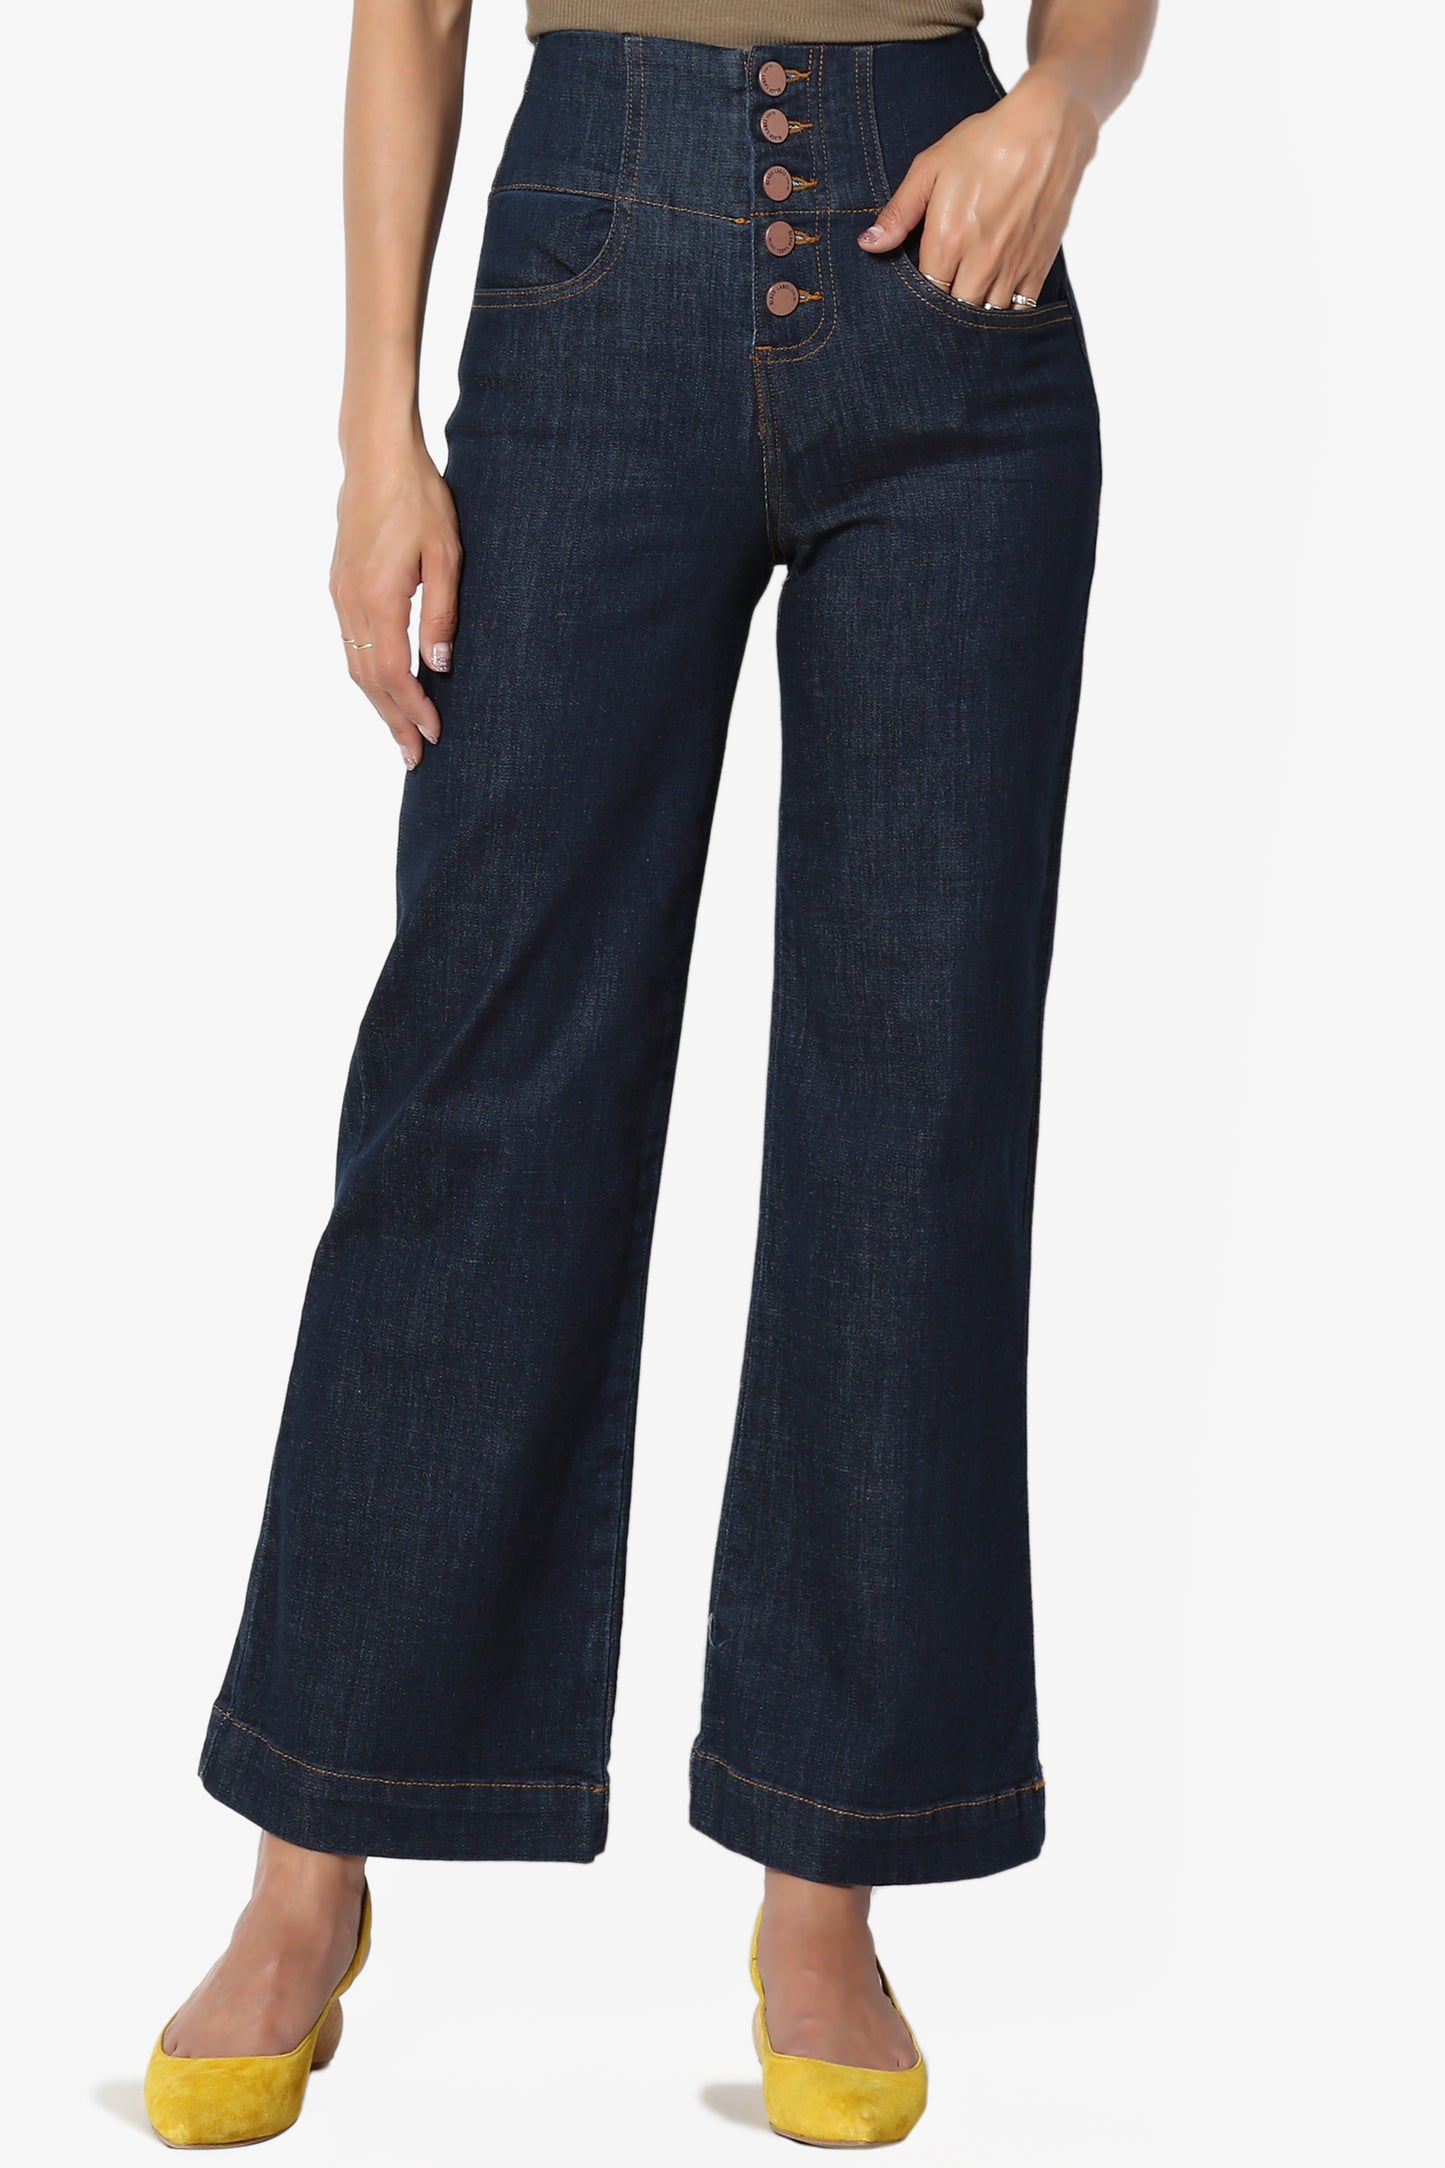 Jeans culotte high waist - Women